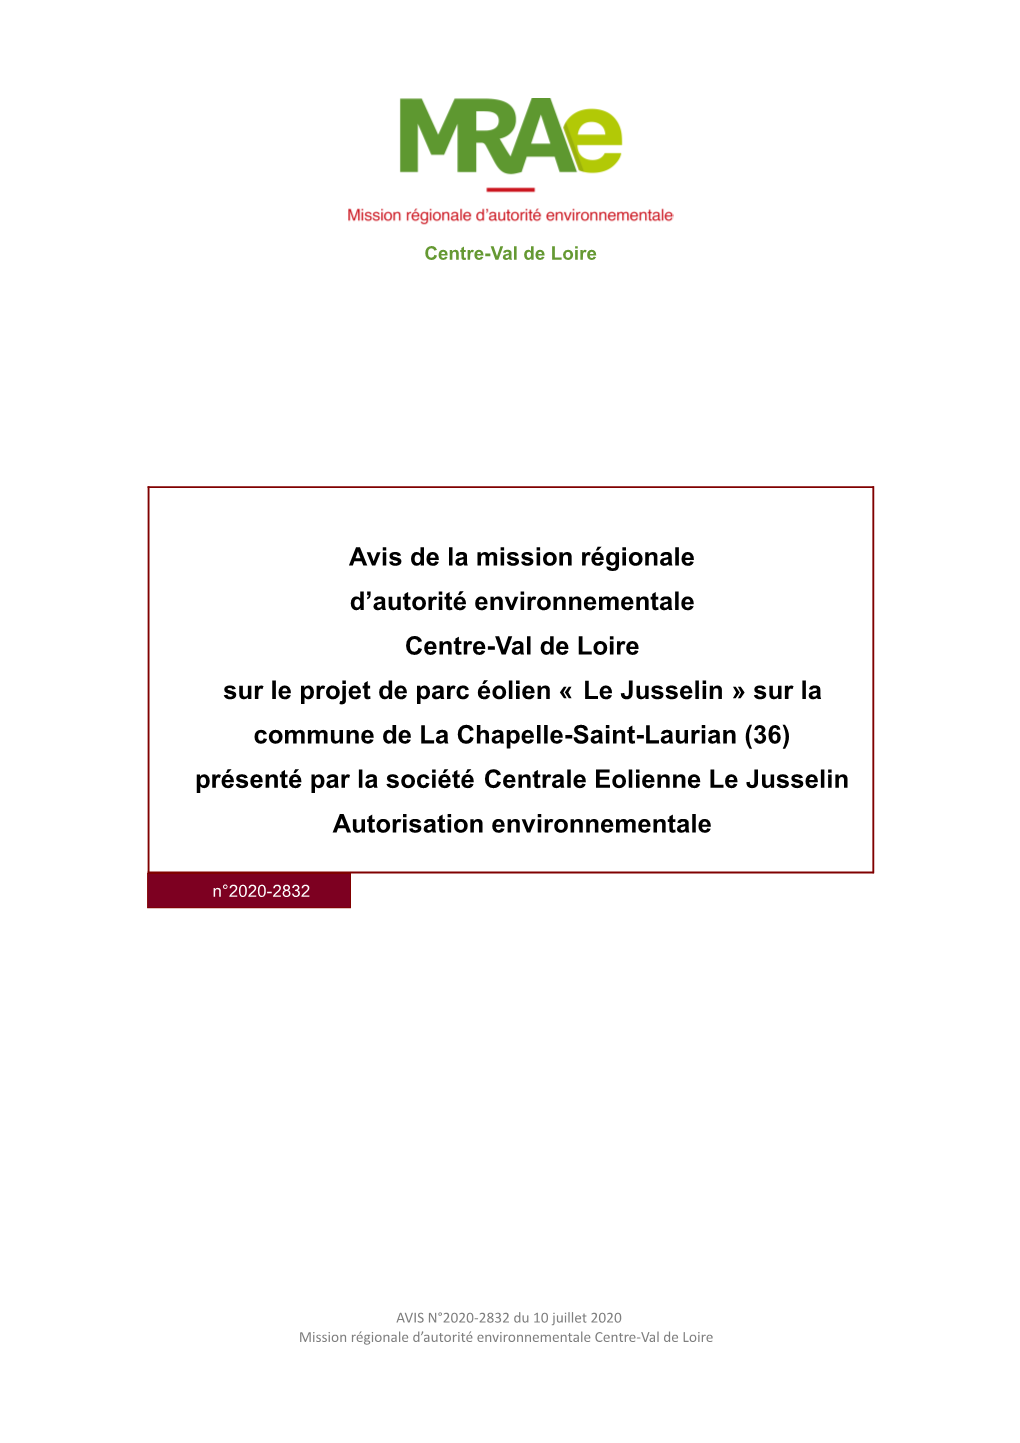 Le Jusselin » Sur La Commune De La Chapelle-Saint-Laurian (36) Présenté Par La Société Centrale Eolienne Le Jusselin Autorisation Environnementale